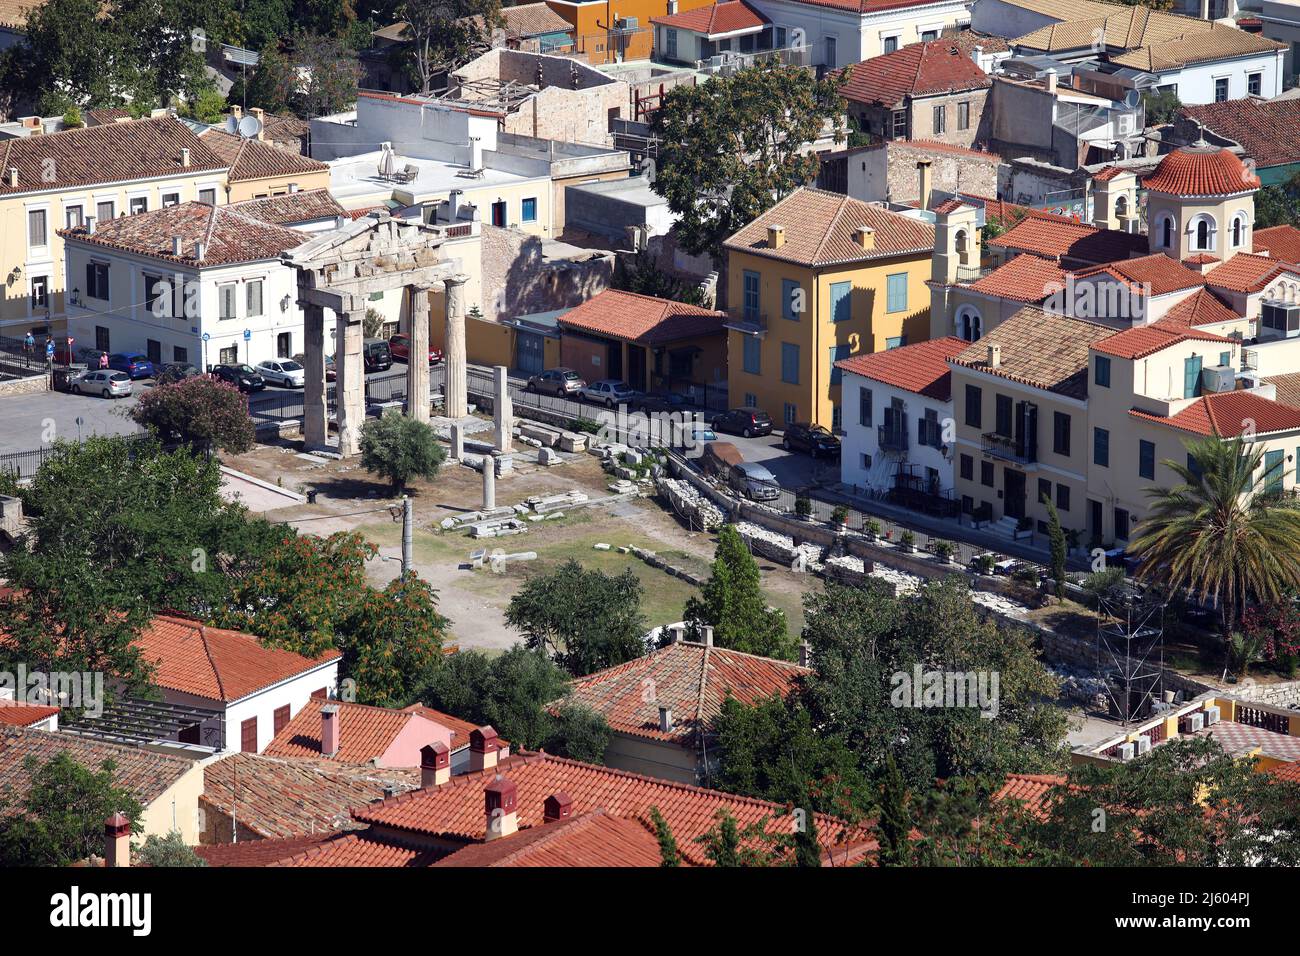 Colonne storiche nel centro della città vecchia Atene vista dall'Acropoli in Grecia. Atene è una delle città più antiche del mondo. Foto Stock